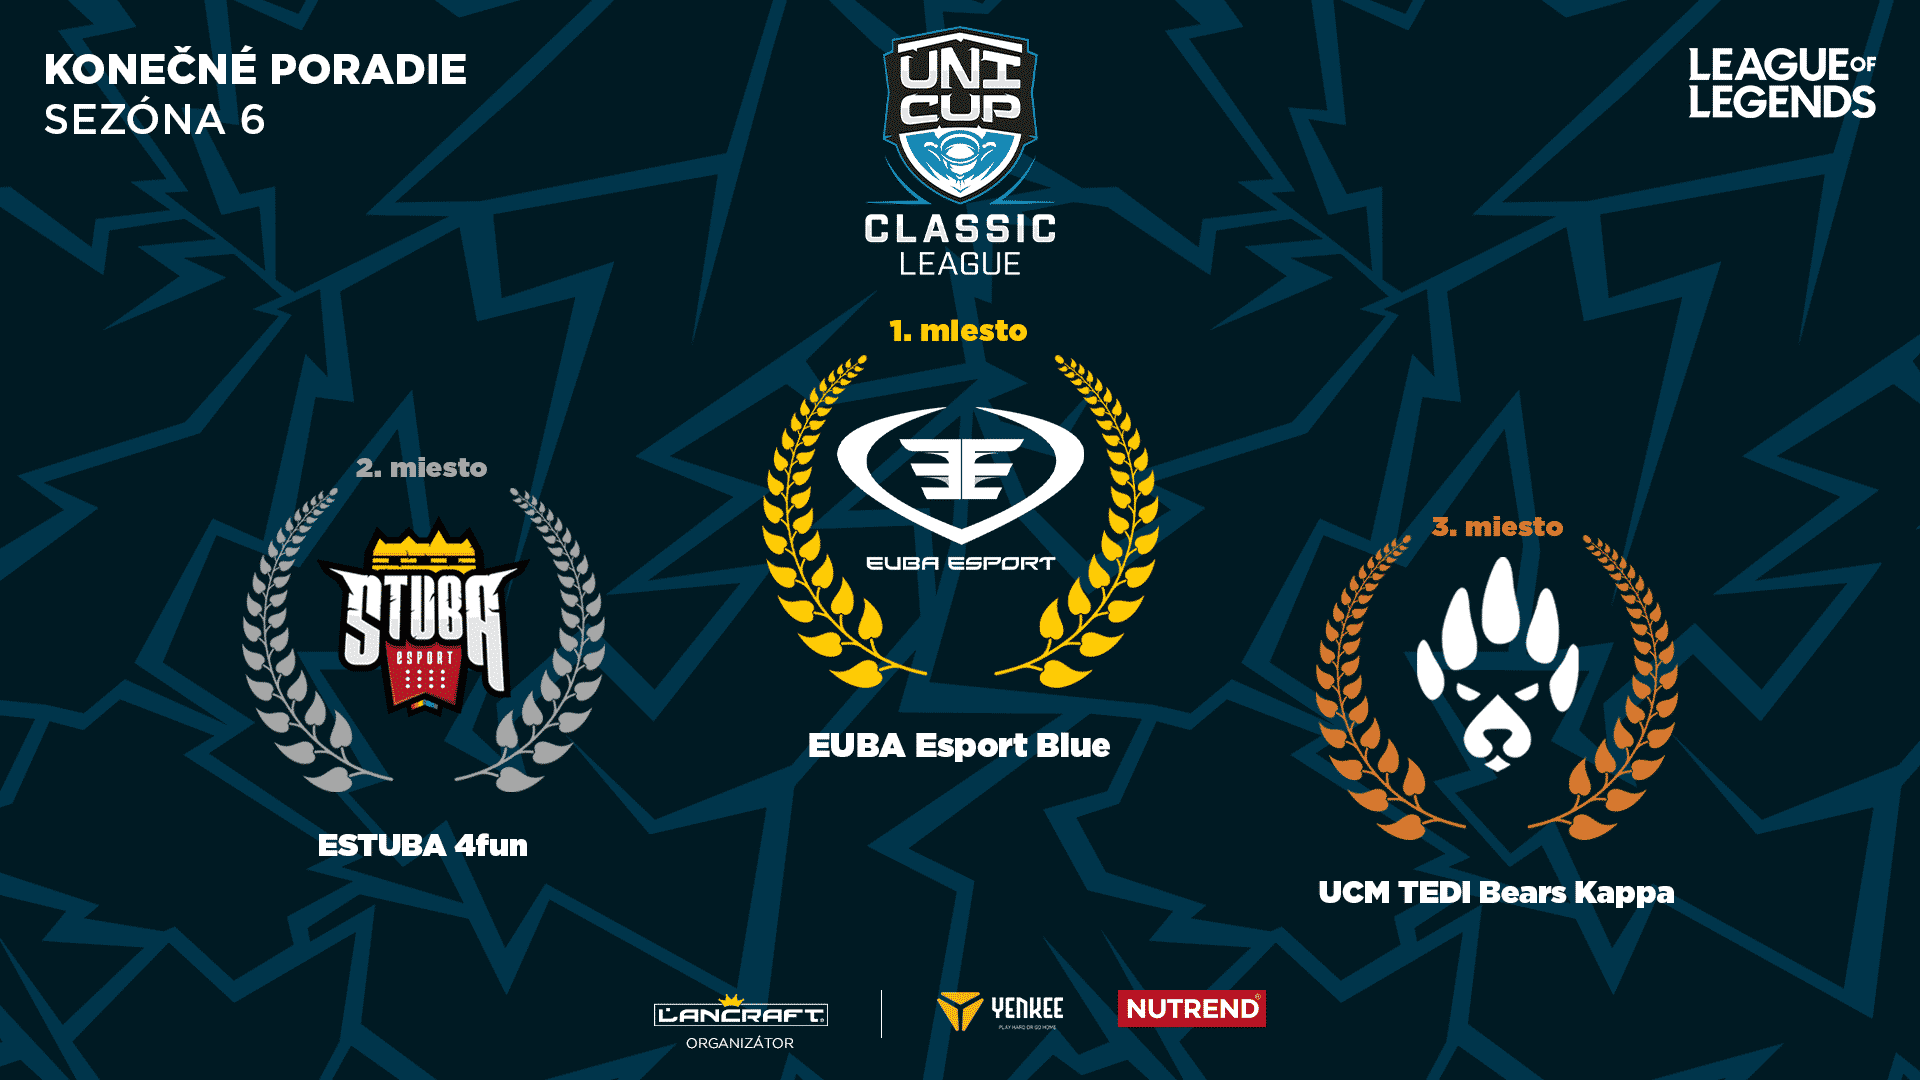 UniCup Prestige League League of Legends